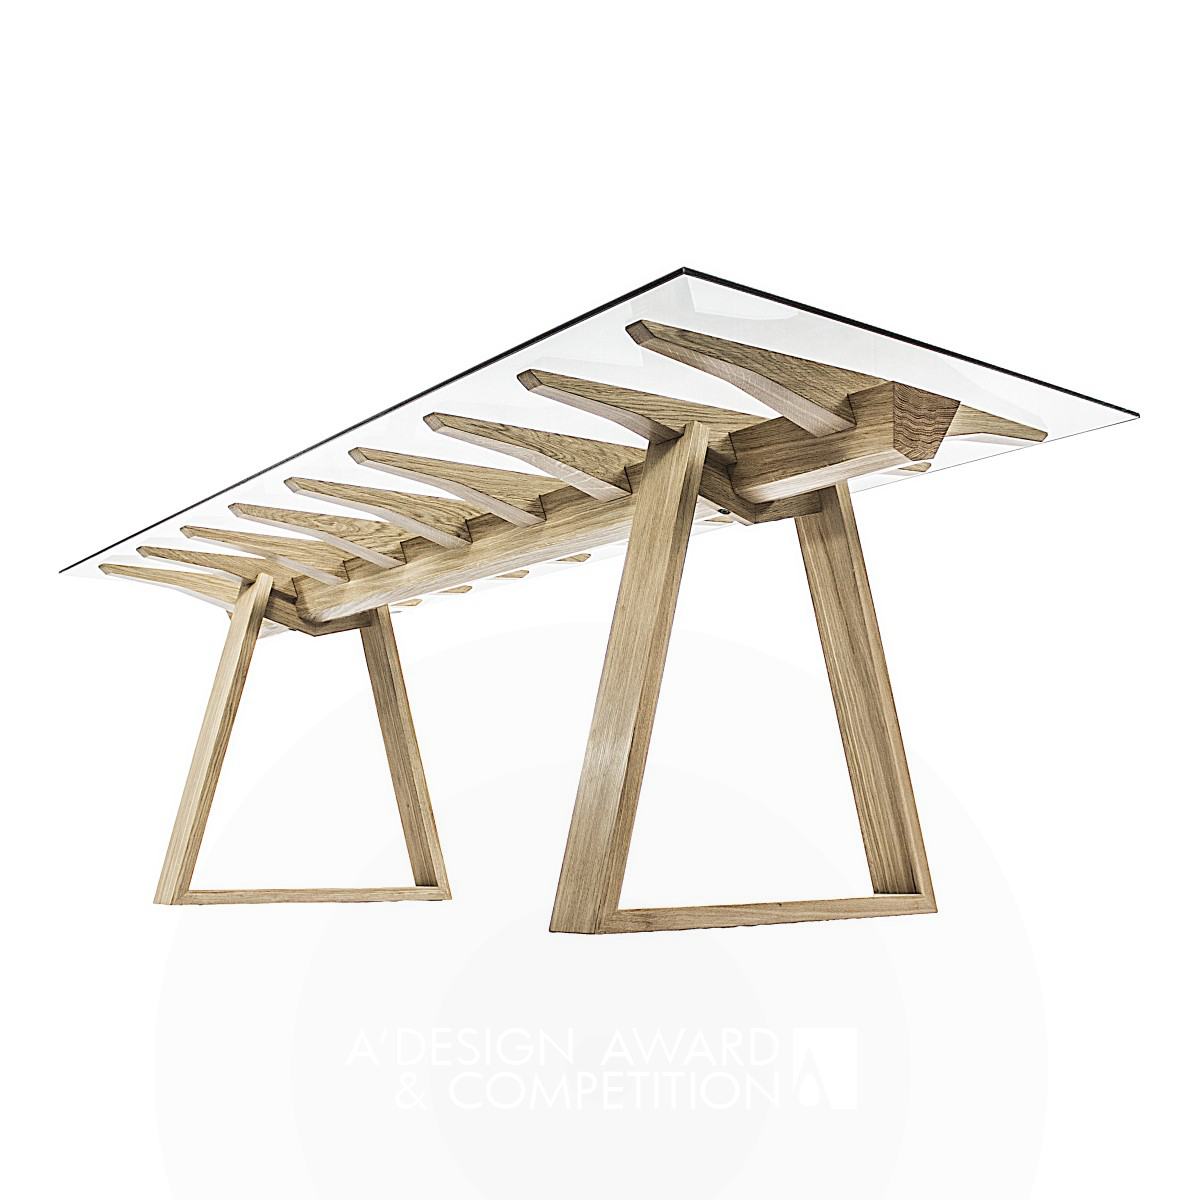 Chiglia Table by Giuliano Ricciardi